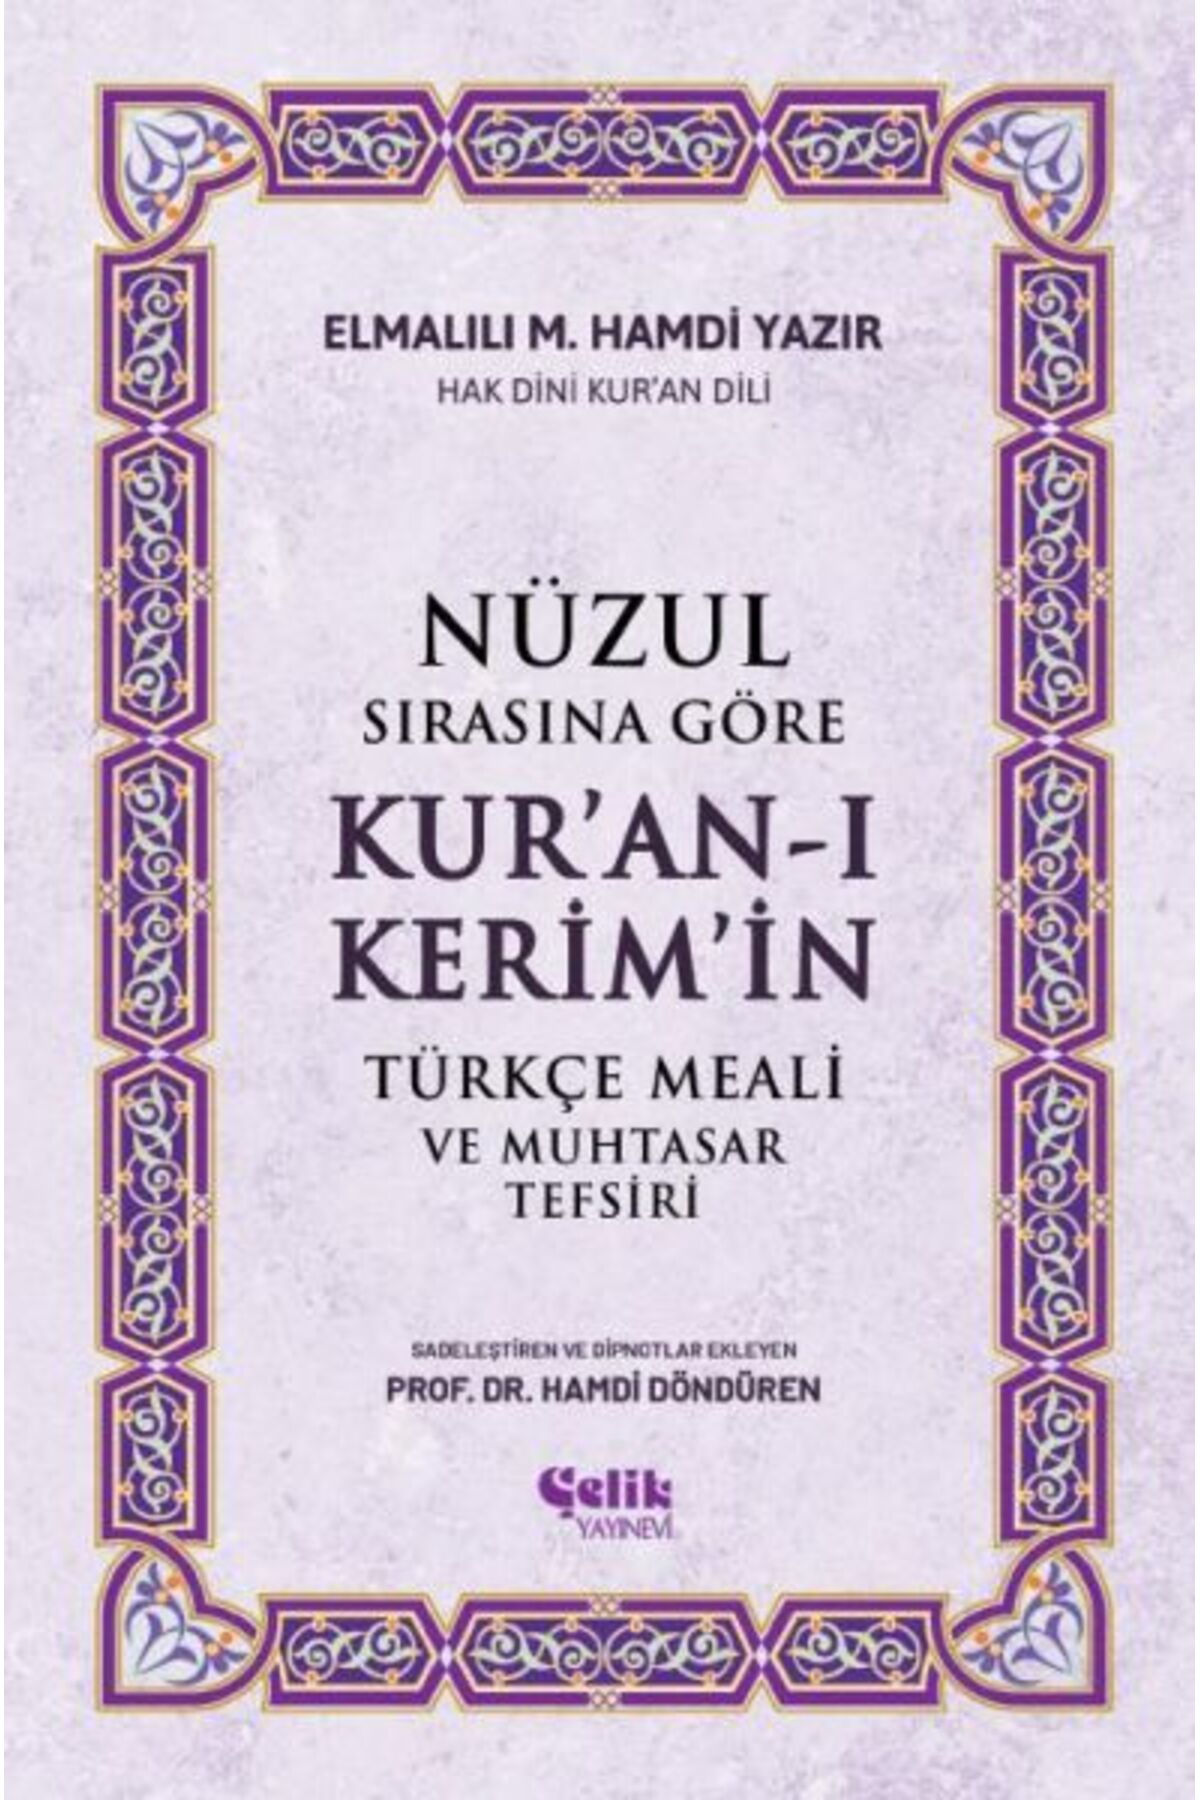 Çelik Yayınevi Nüzul Sırasına Göre Kur'an-ı Keri·m'i·n Türkçe Meali· Ve Muhtasar Tefsiri